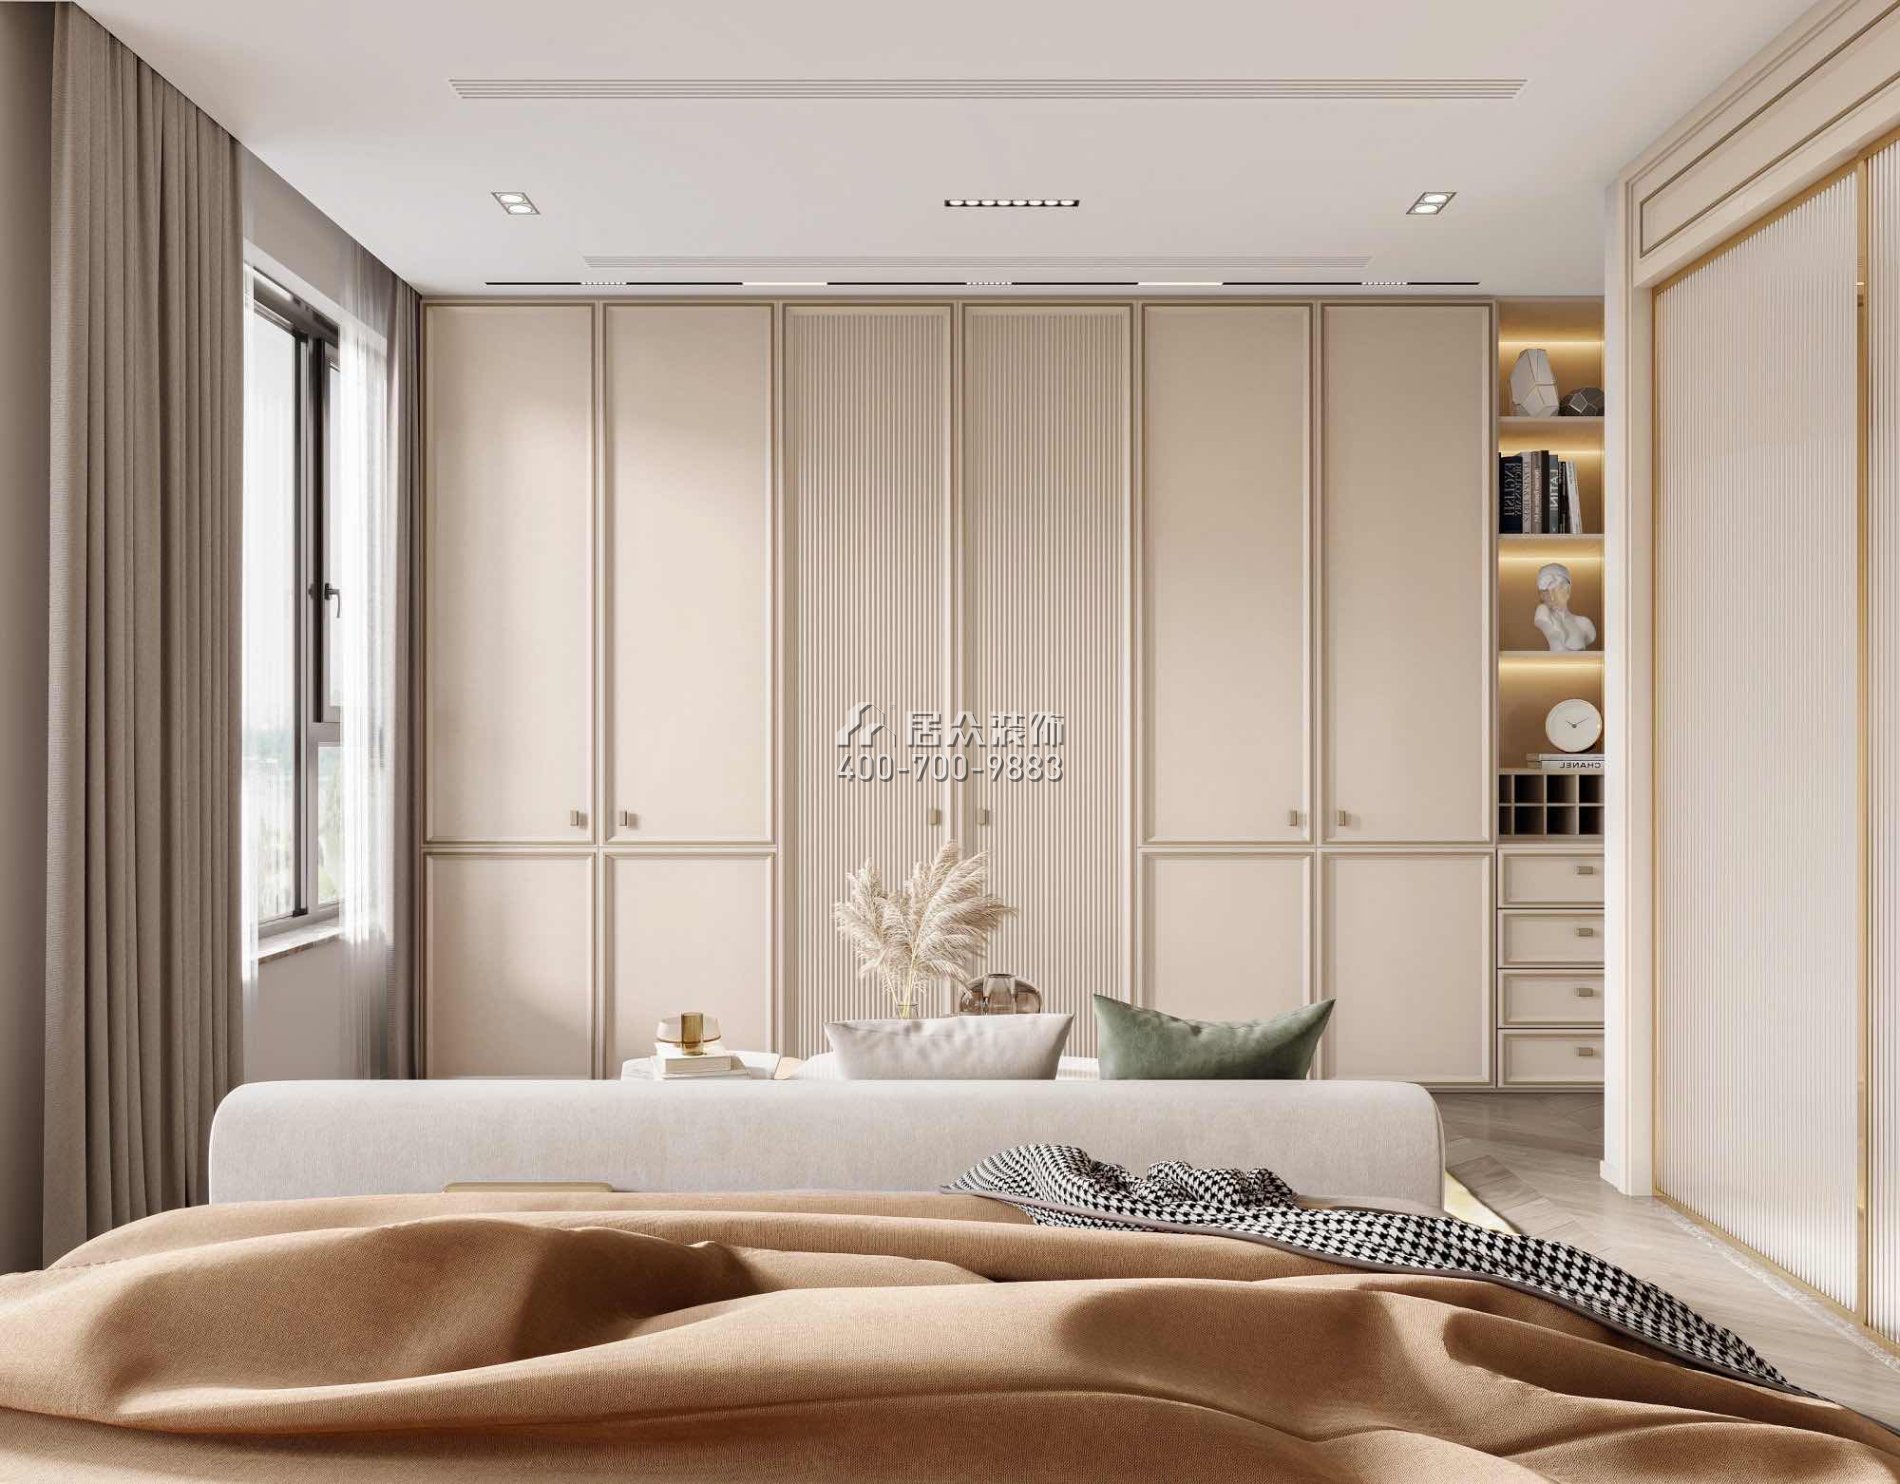 恒裕水墨蘭亭360平方米中式風格復式戶型臥室裝修效果圖